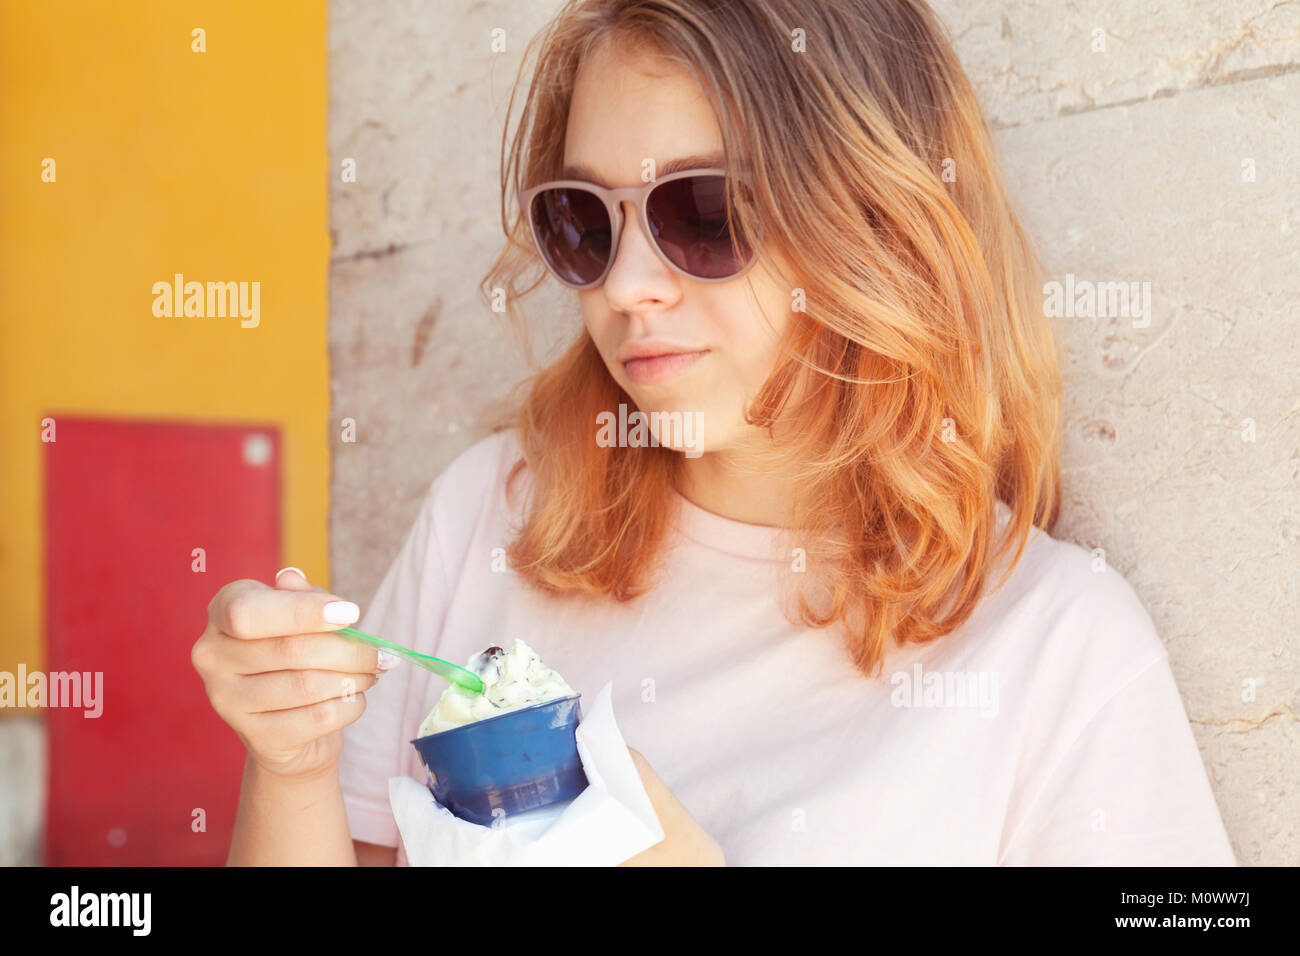 Europeo teenage girl in occhiali da sole mangia frutta gelato, close-up ritratto all'aperto Foto Stock